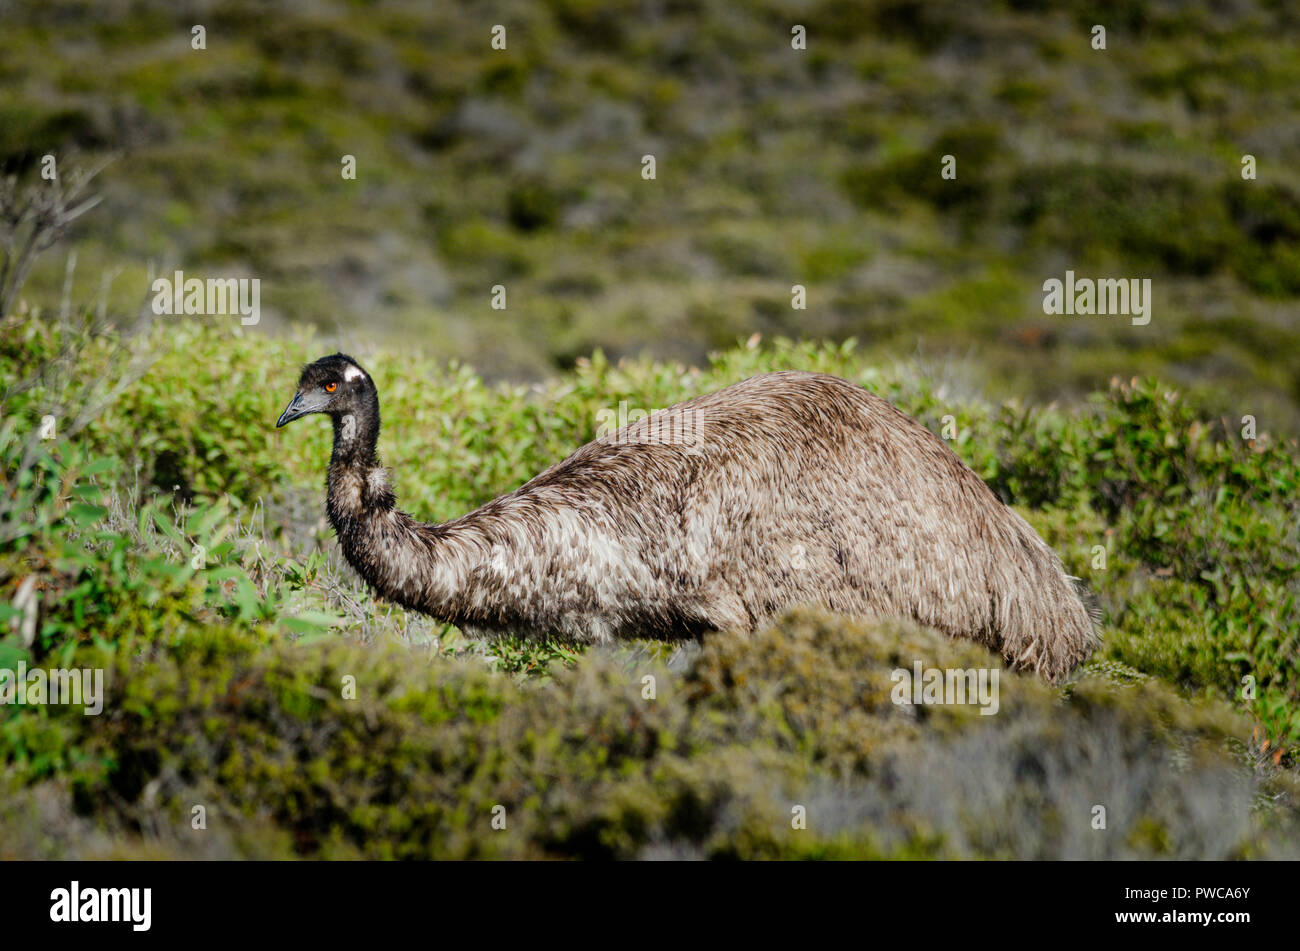 Emus (Dromaius novaehollandiae) walking through coastal scrub at Coffin Bay National Park South Australia Stock Photo